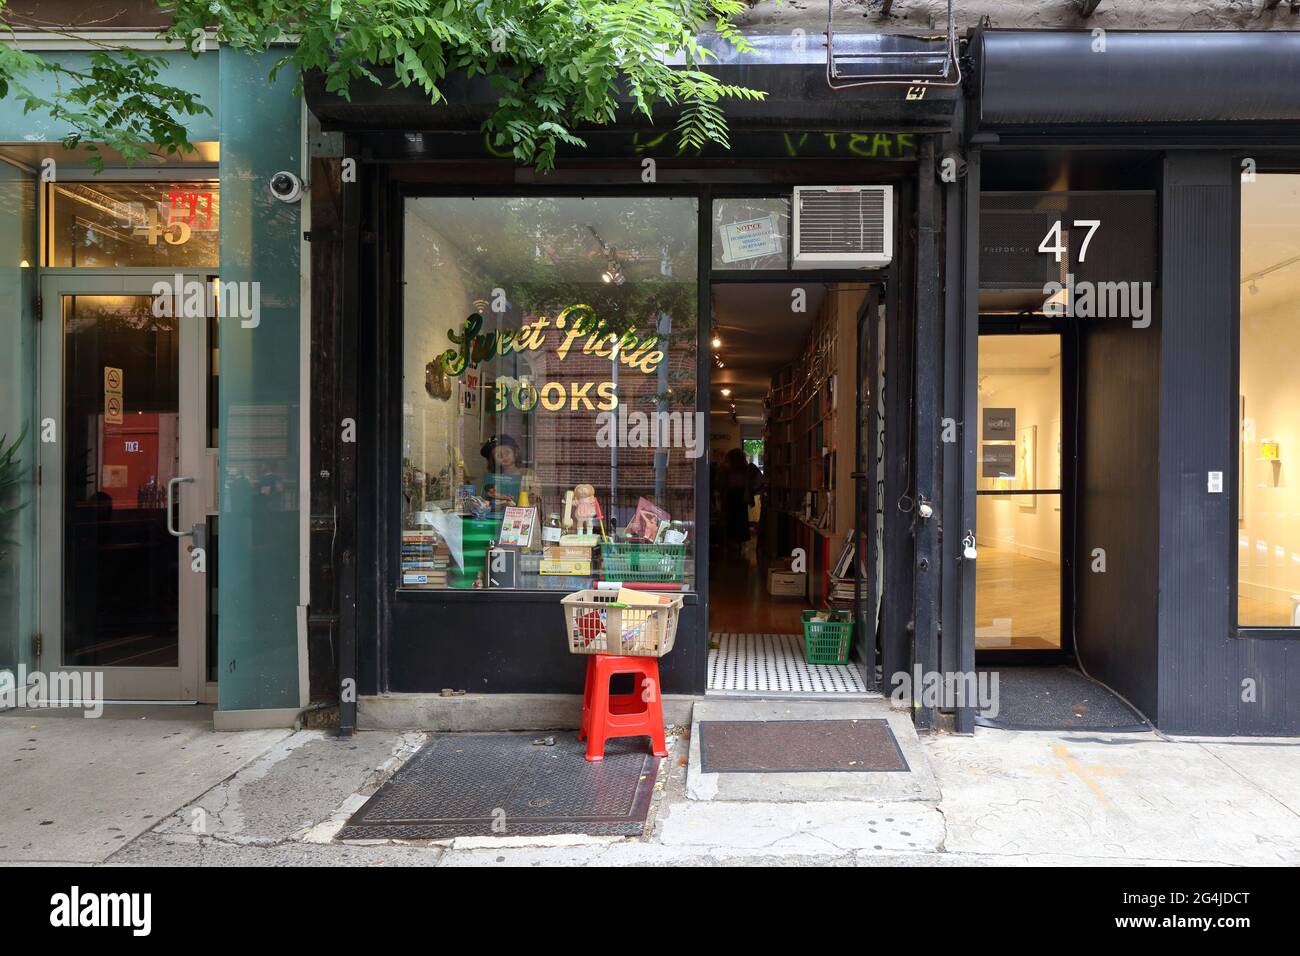 Sweet Pickle Books, 47 Orchard St, Nueva York, Nueva York, Nueva York, Nueva York, foto del escaparate de una librería usada y una tienda de carpinchos en el Lower East Side de Manhattan. Foto de stock